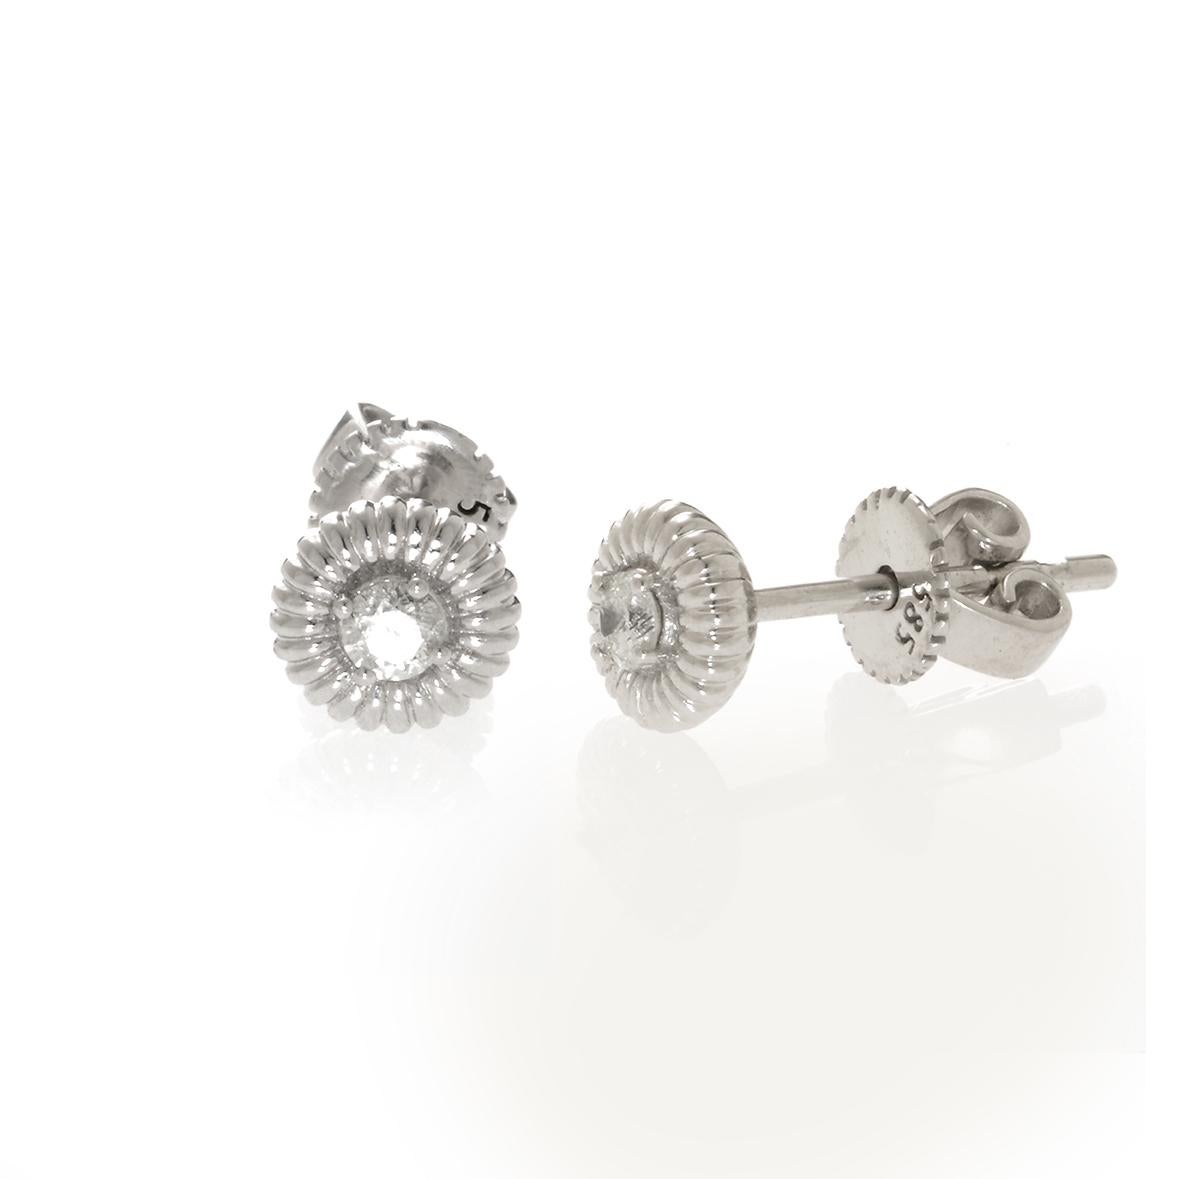 Round brilliant diamond earrings in 14 k white gold.

5mm diameter.